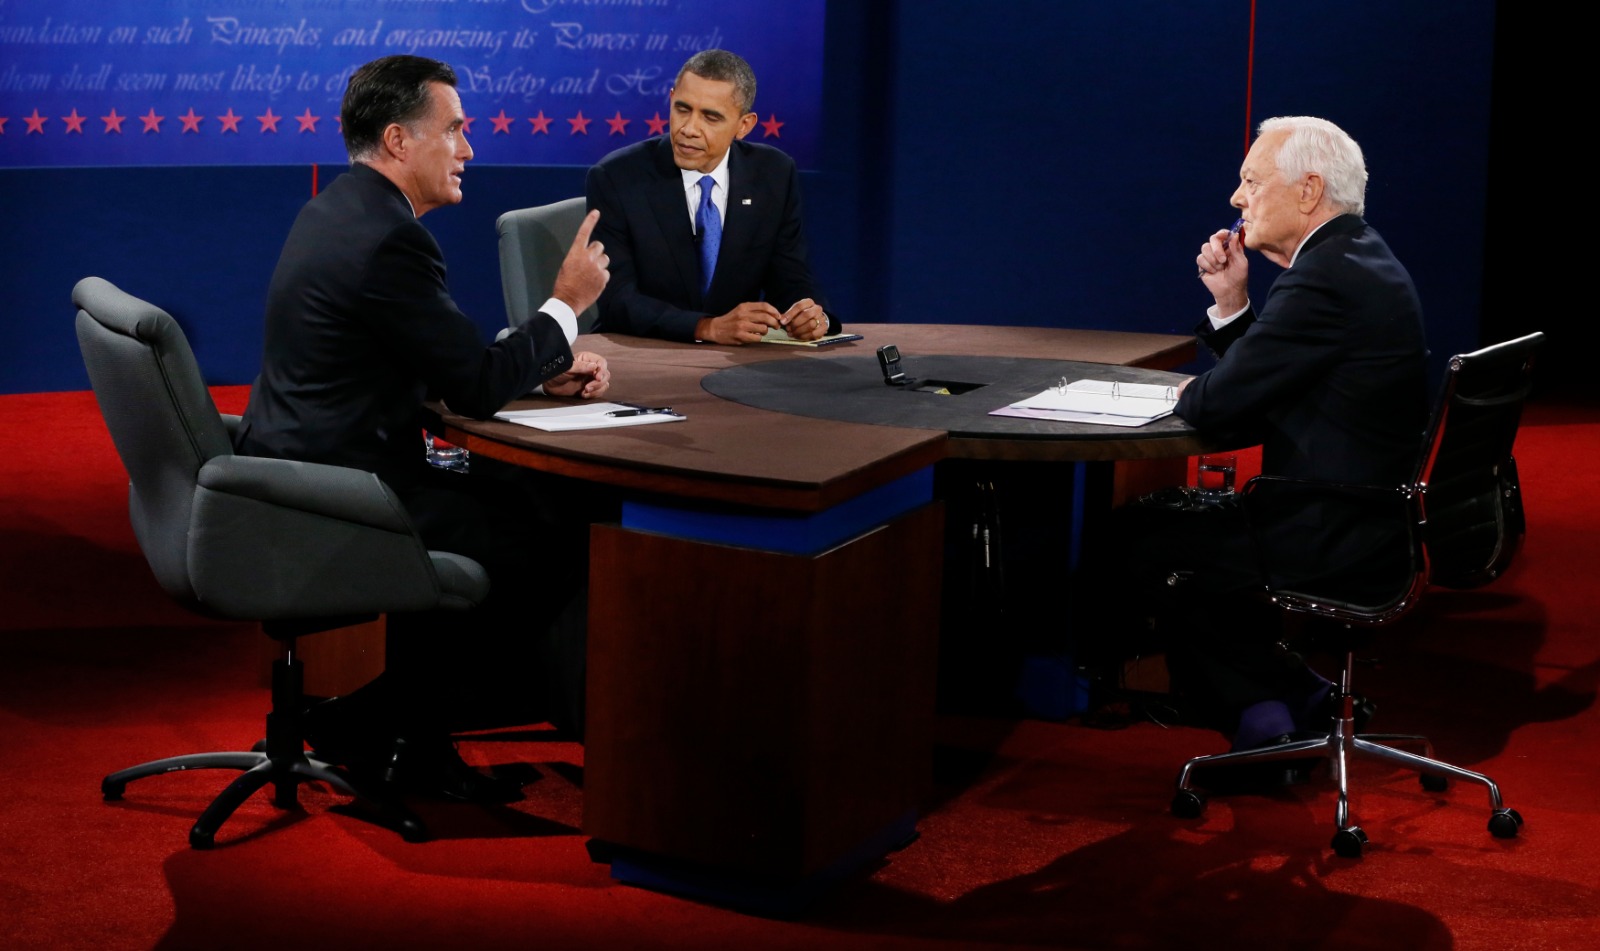 ميت رومني وباراك أوباما يتناقشان خلال المناظرة الرئاسية في بوكا راتون بولاية فلوريدا. 22 أكتوبر 2012